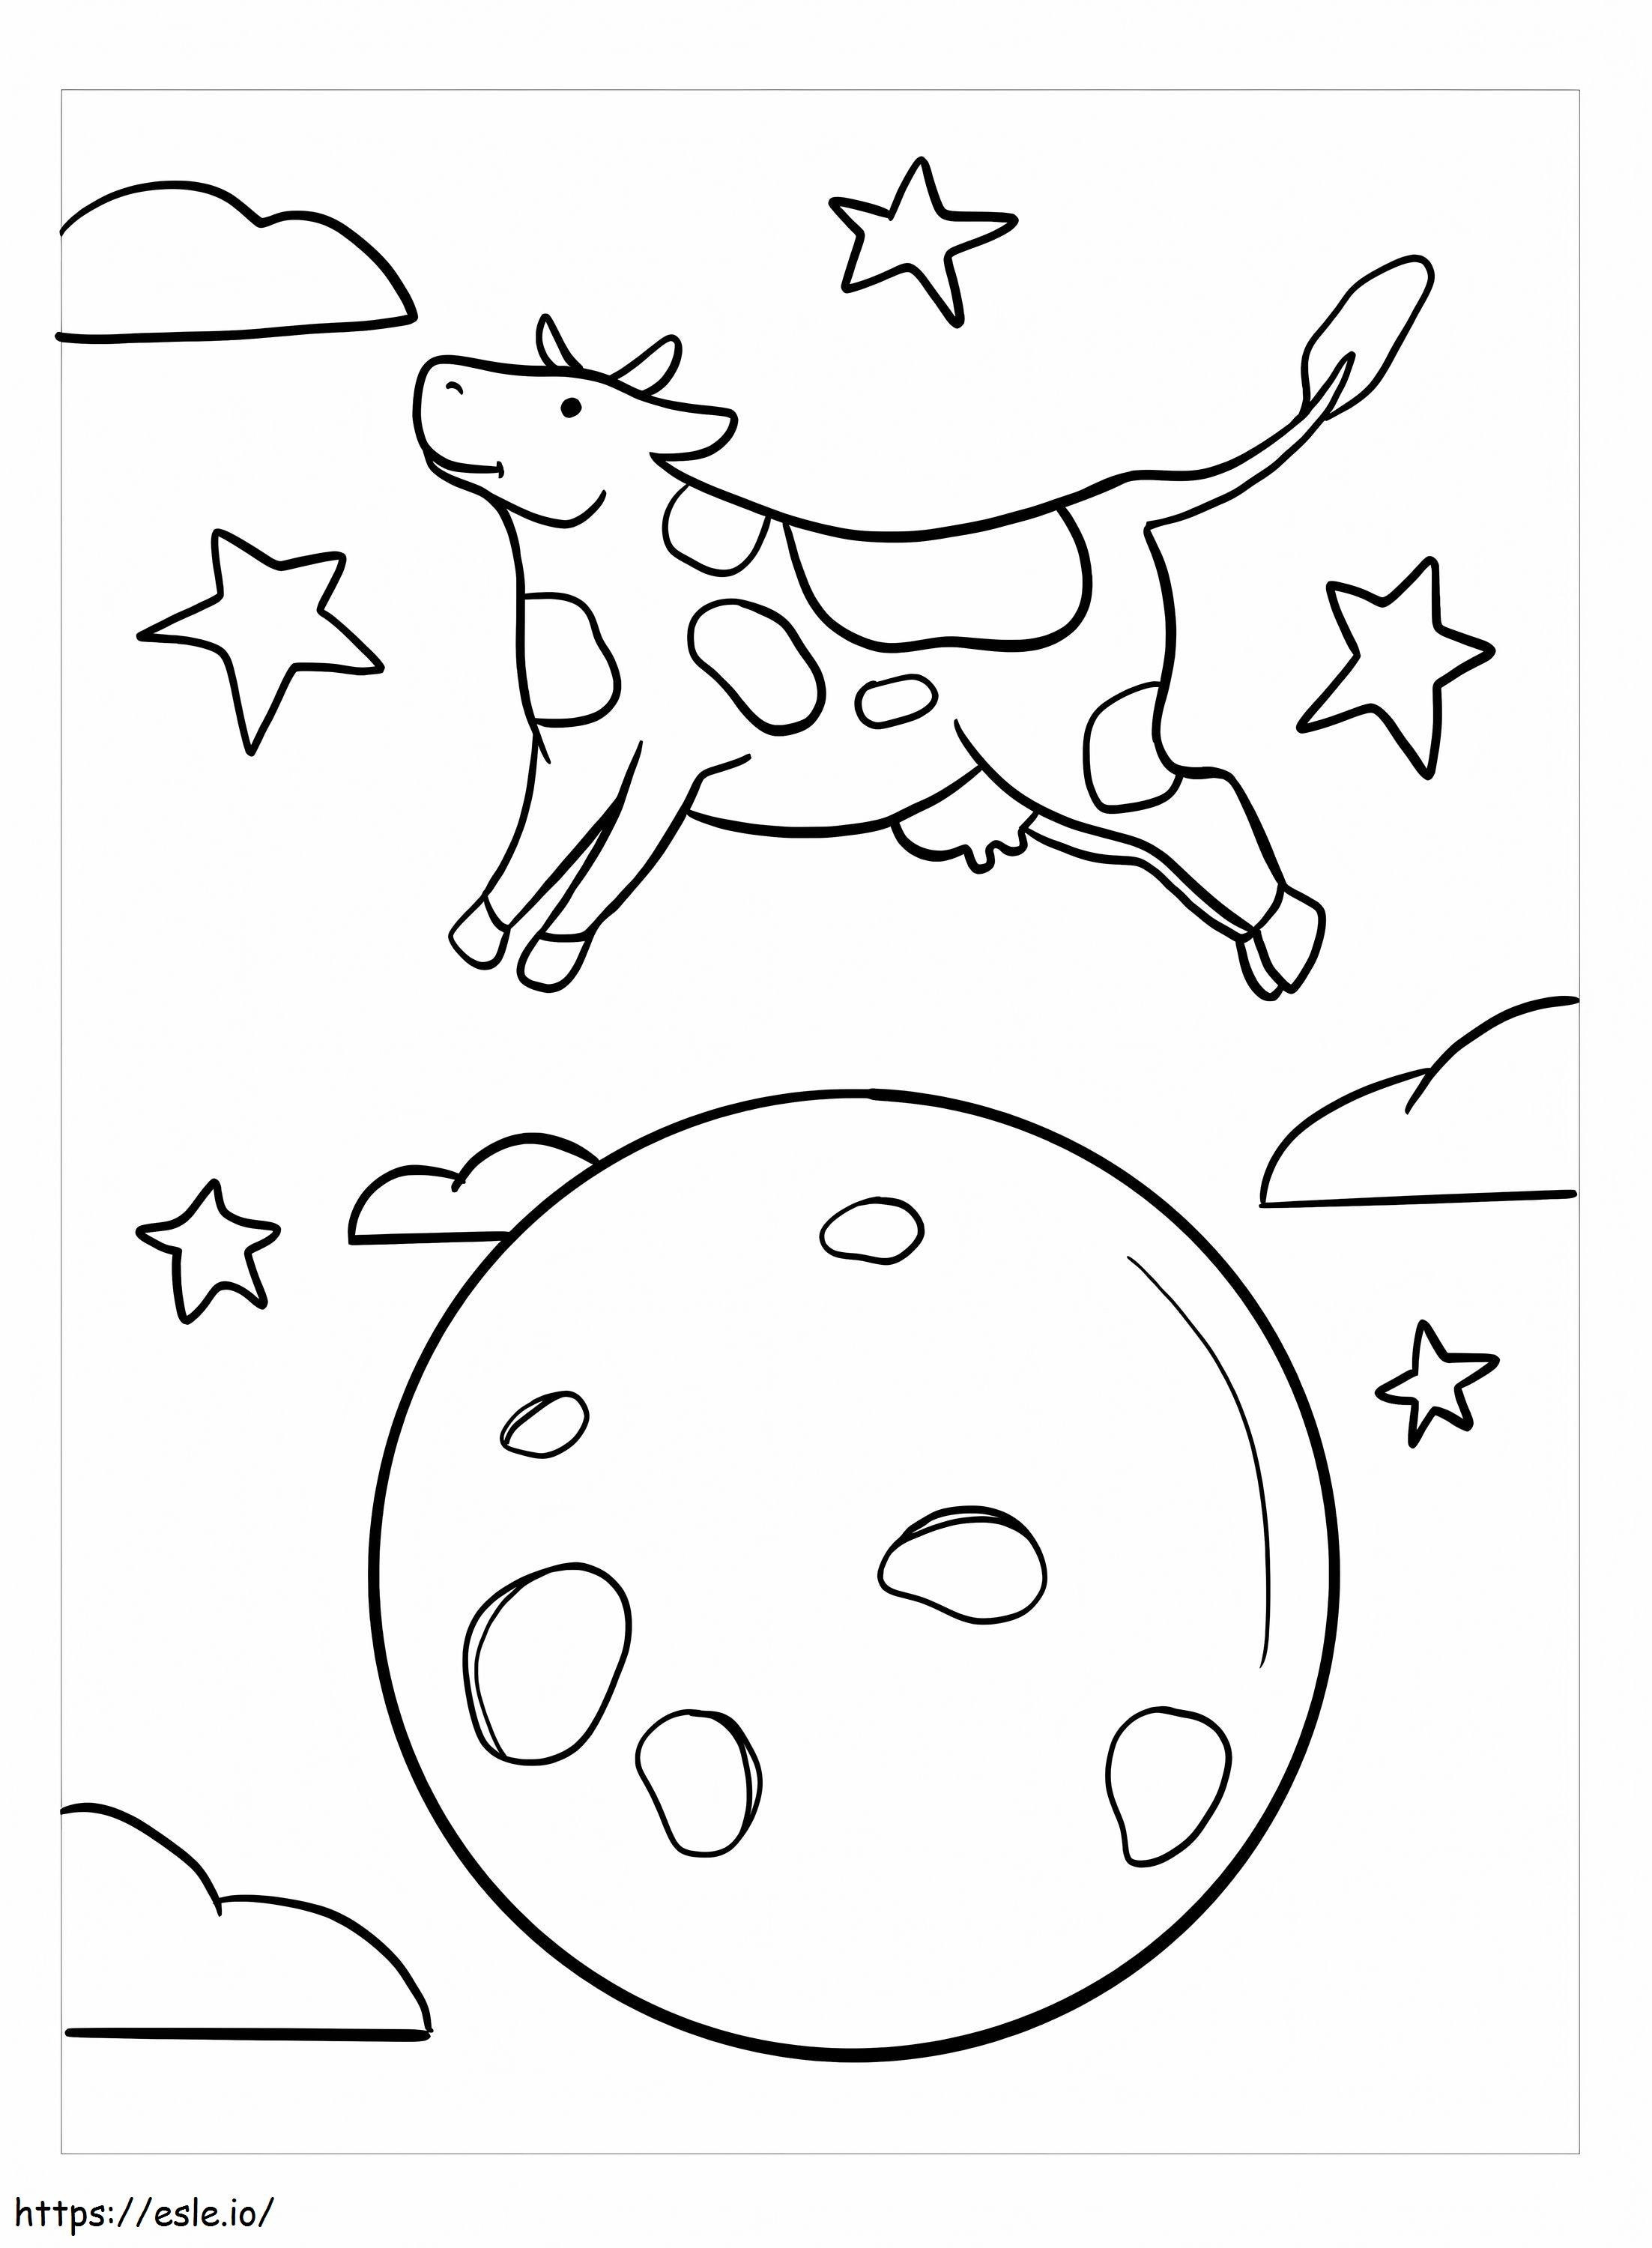 Vaca salta sobre a lua para colorir